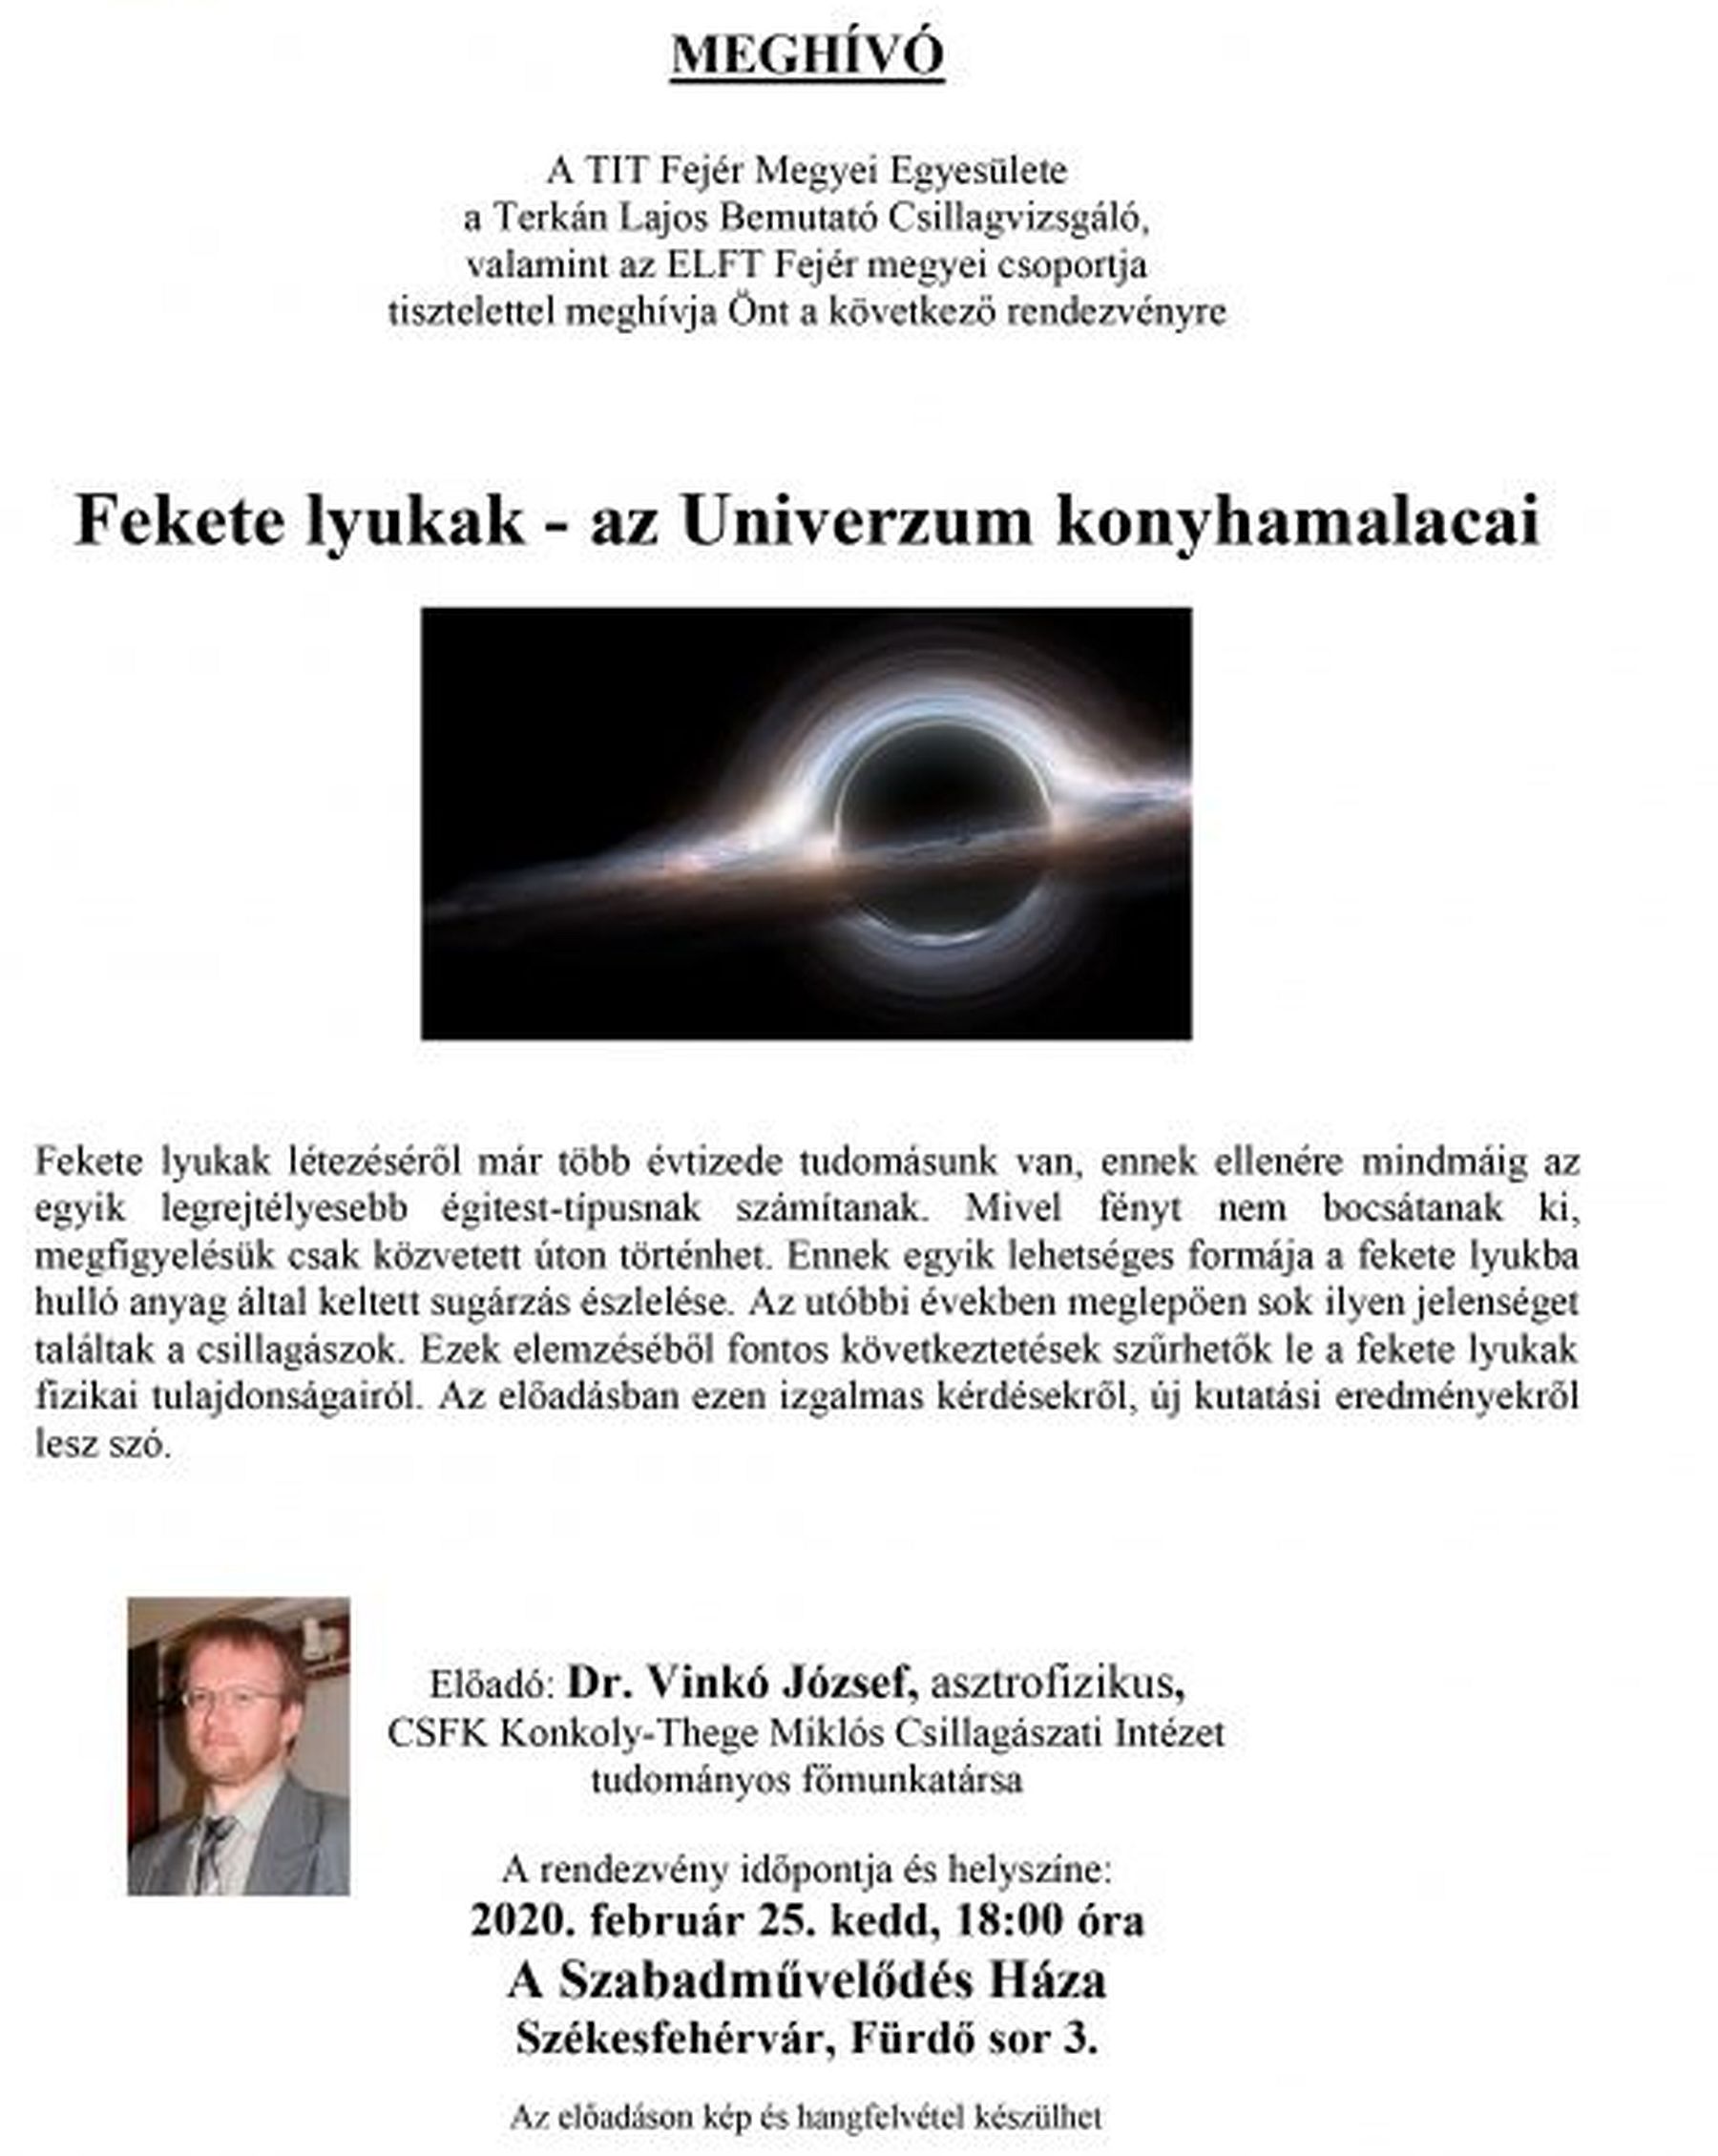 Az univerzum konyhamalacai - dr. Vinkó József asztrofizikus előadása a fekete lyukakról